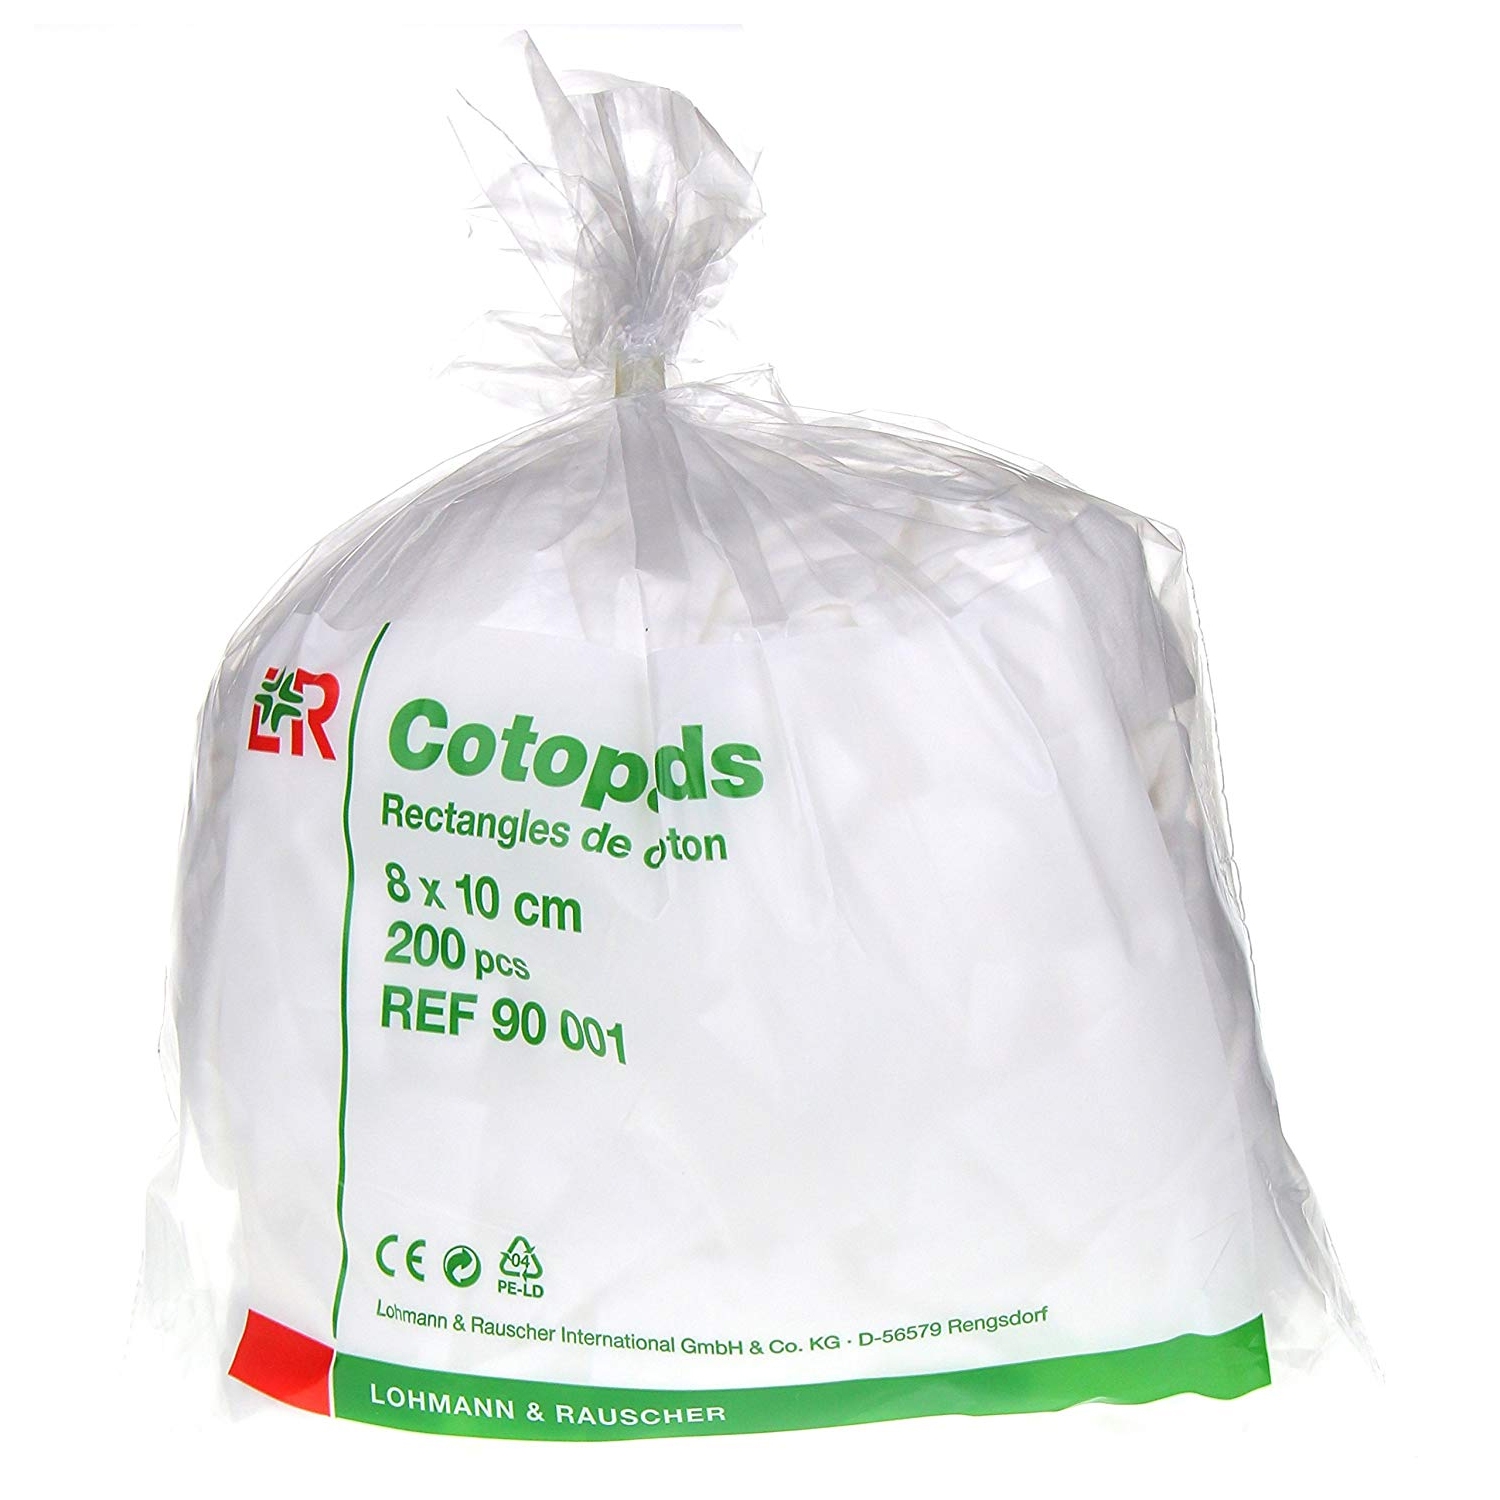 Cotopads coton rectangulaire - 8 x 10 cm (200 pcs)